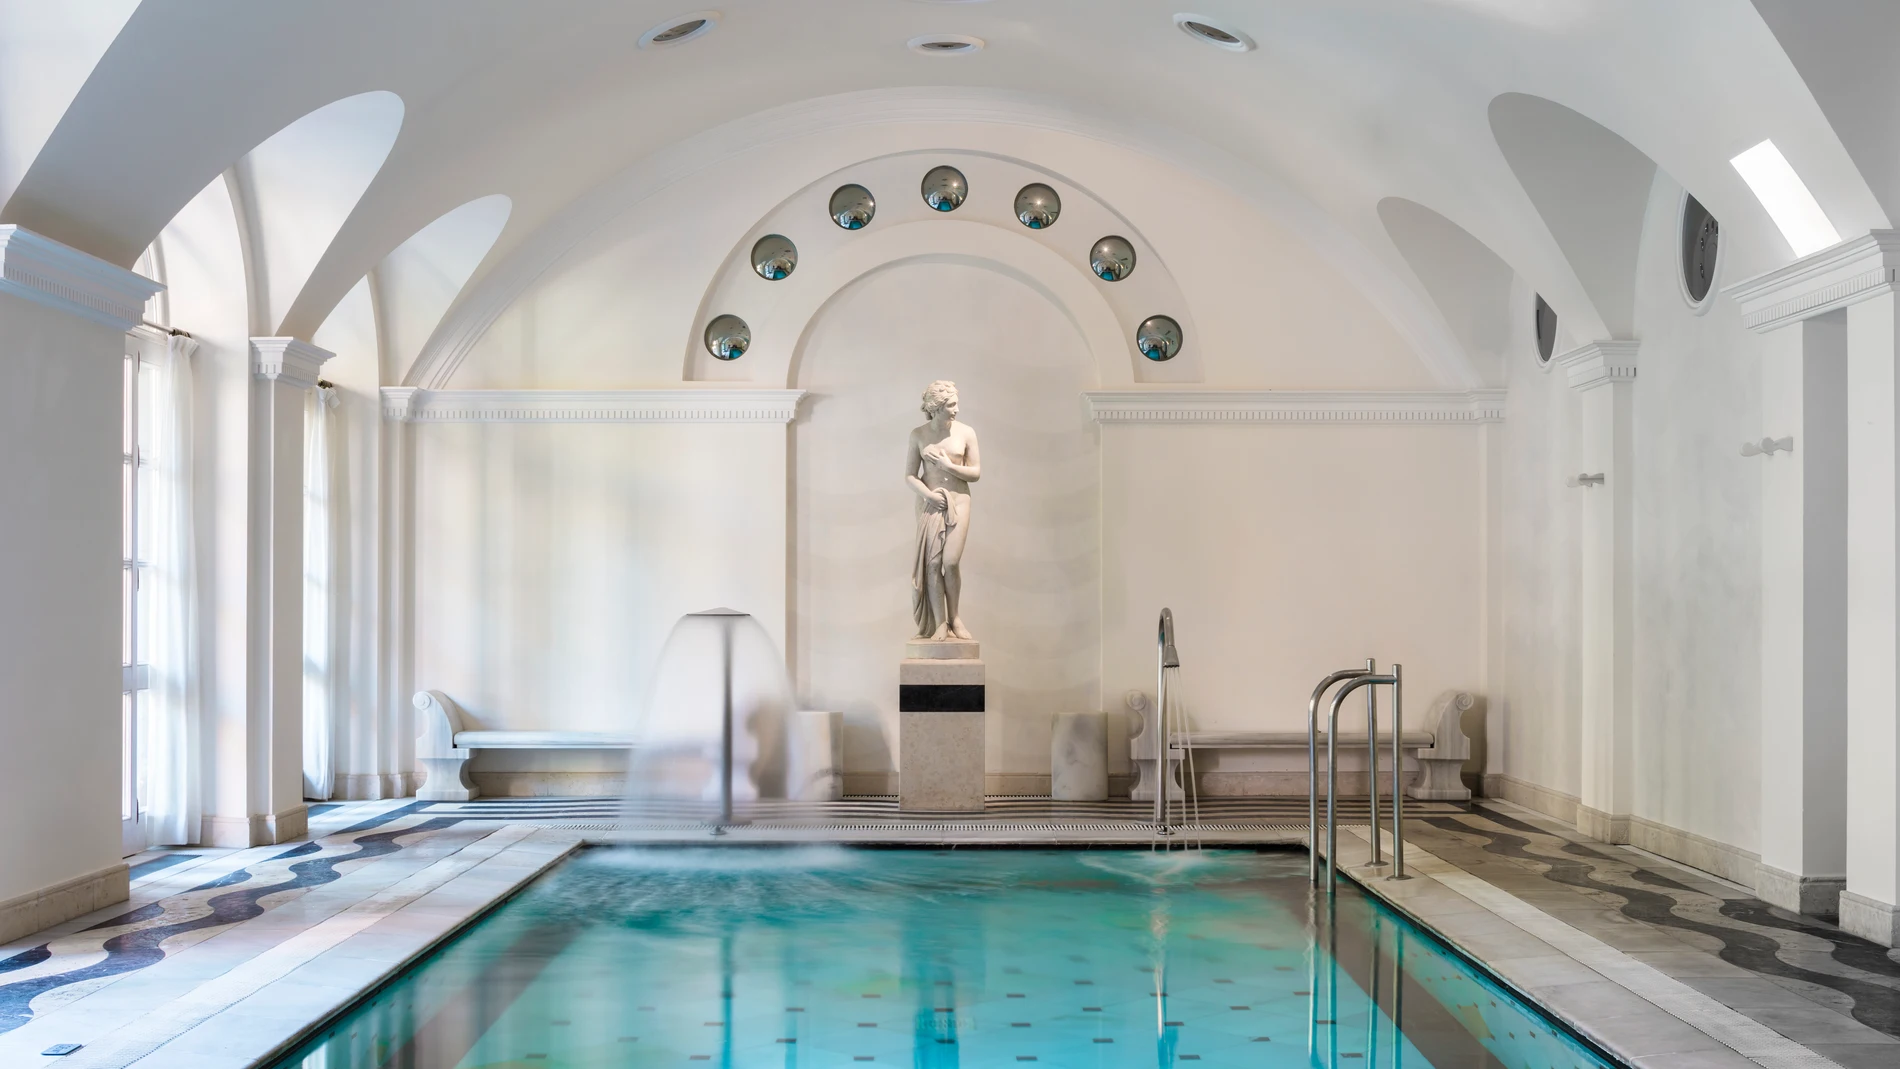 Impresionante piscina interior con chorros de agua relajantes